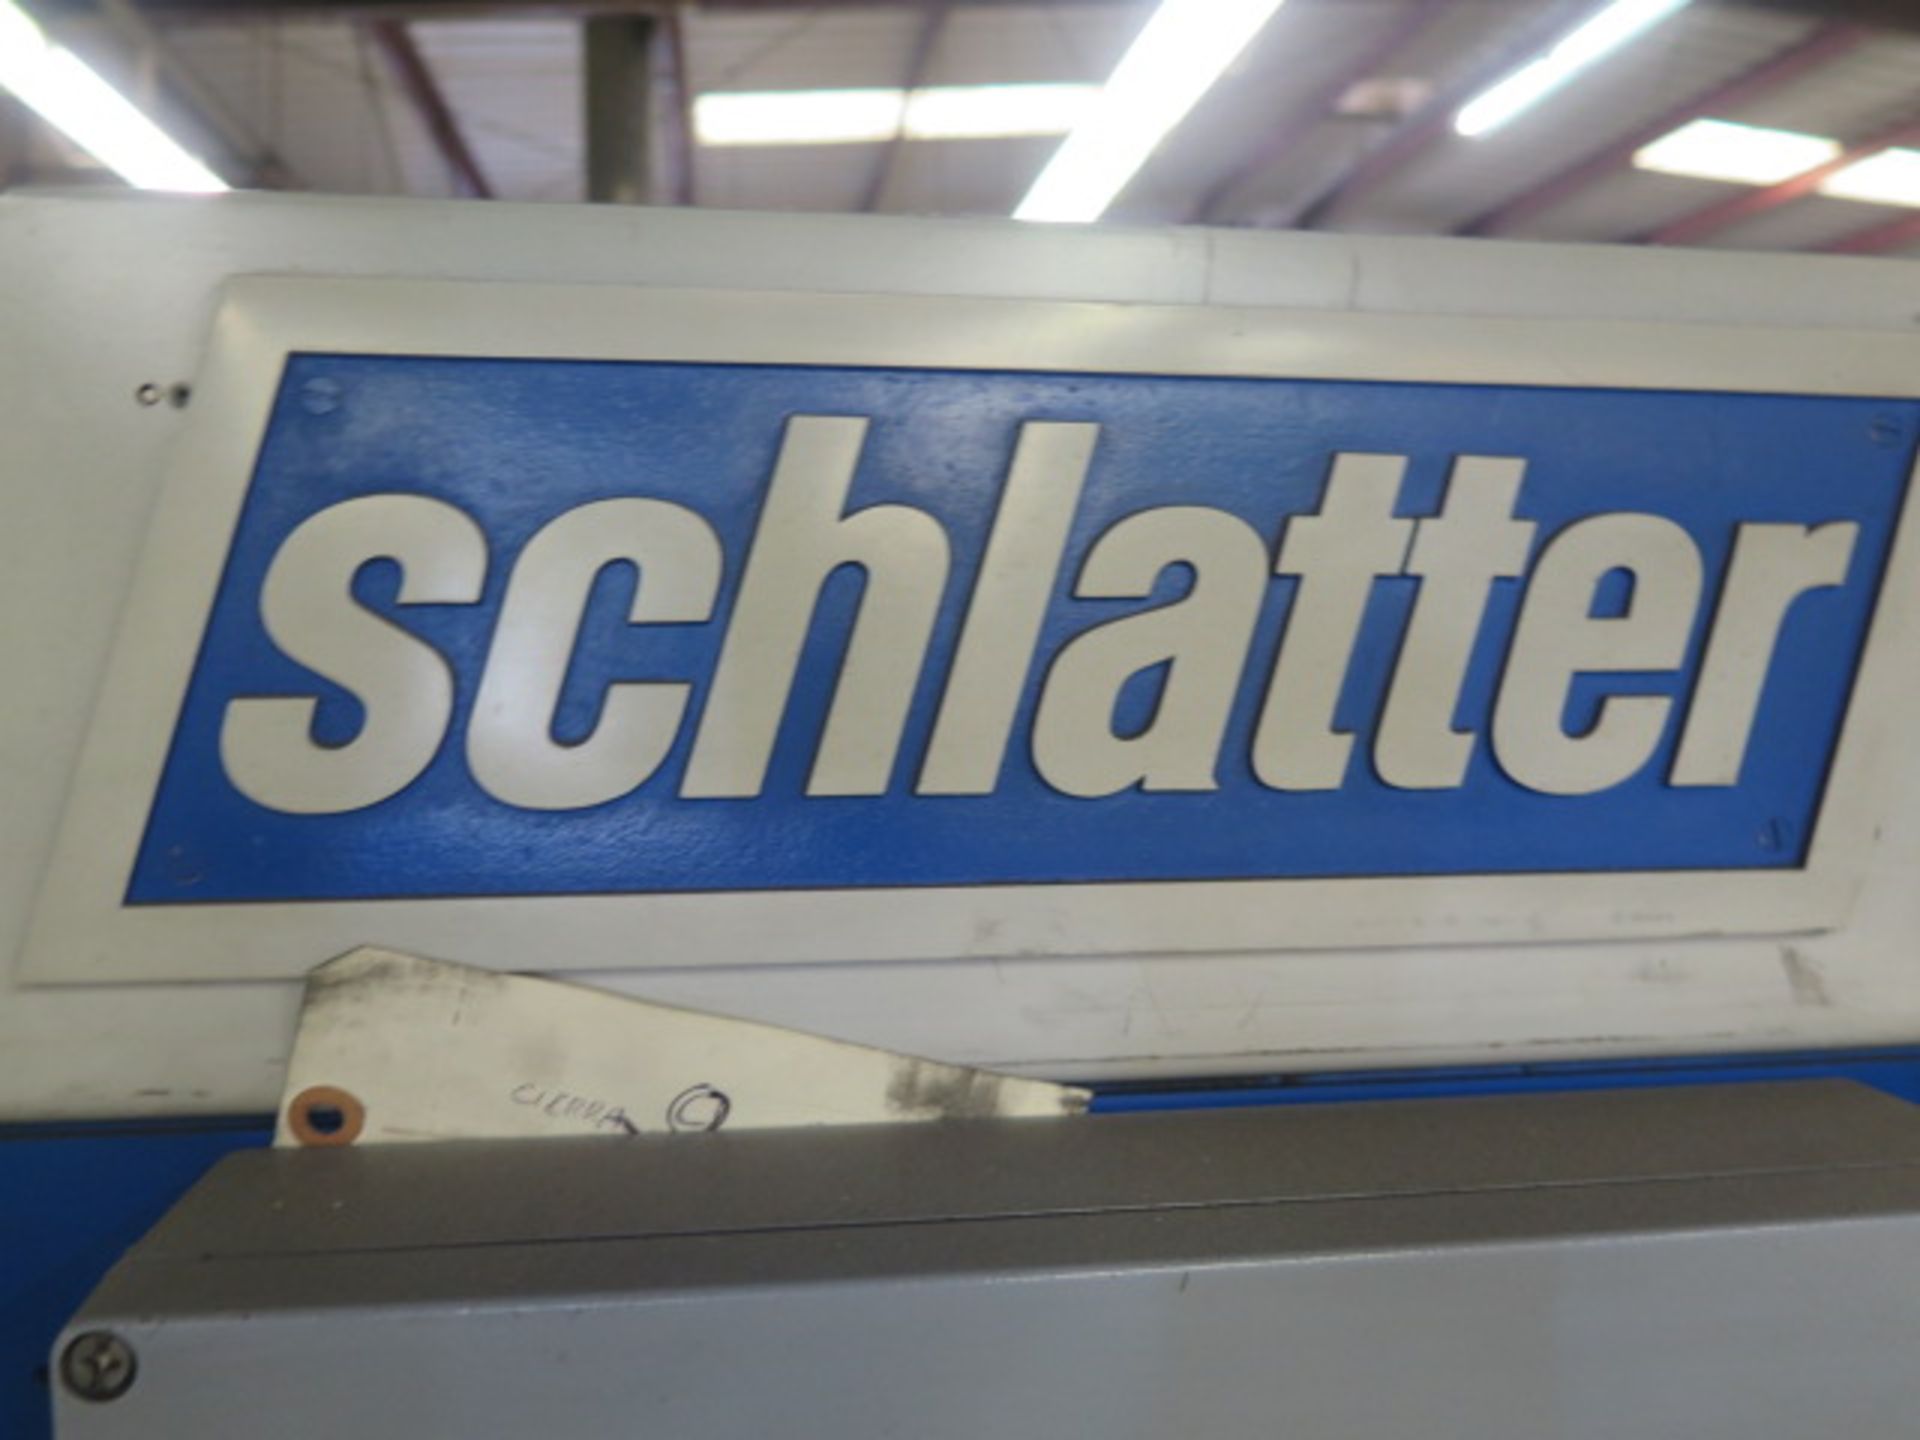 1999 Schlatter Leistundsschlater 60” CNC Mesh Welder s/n GS1.9368.5991 w/ Schlatter CNC, SOLD AS IS - Image 19 of 19